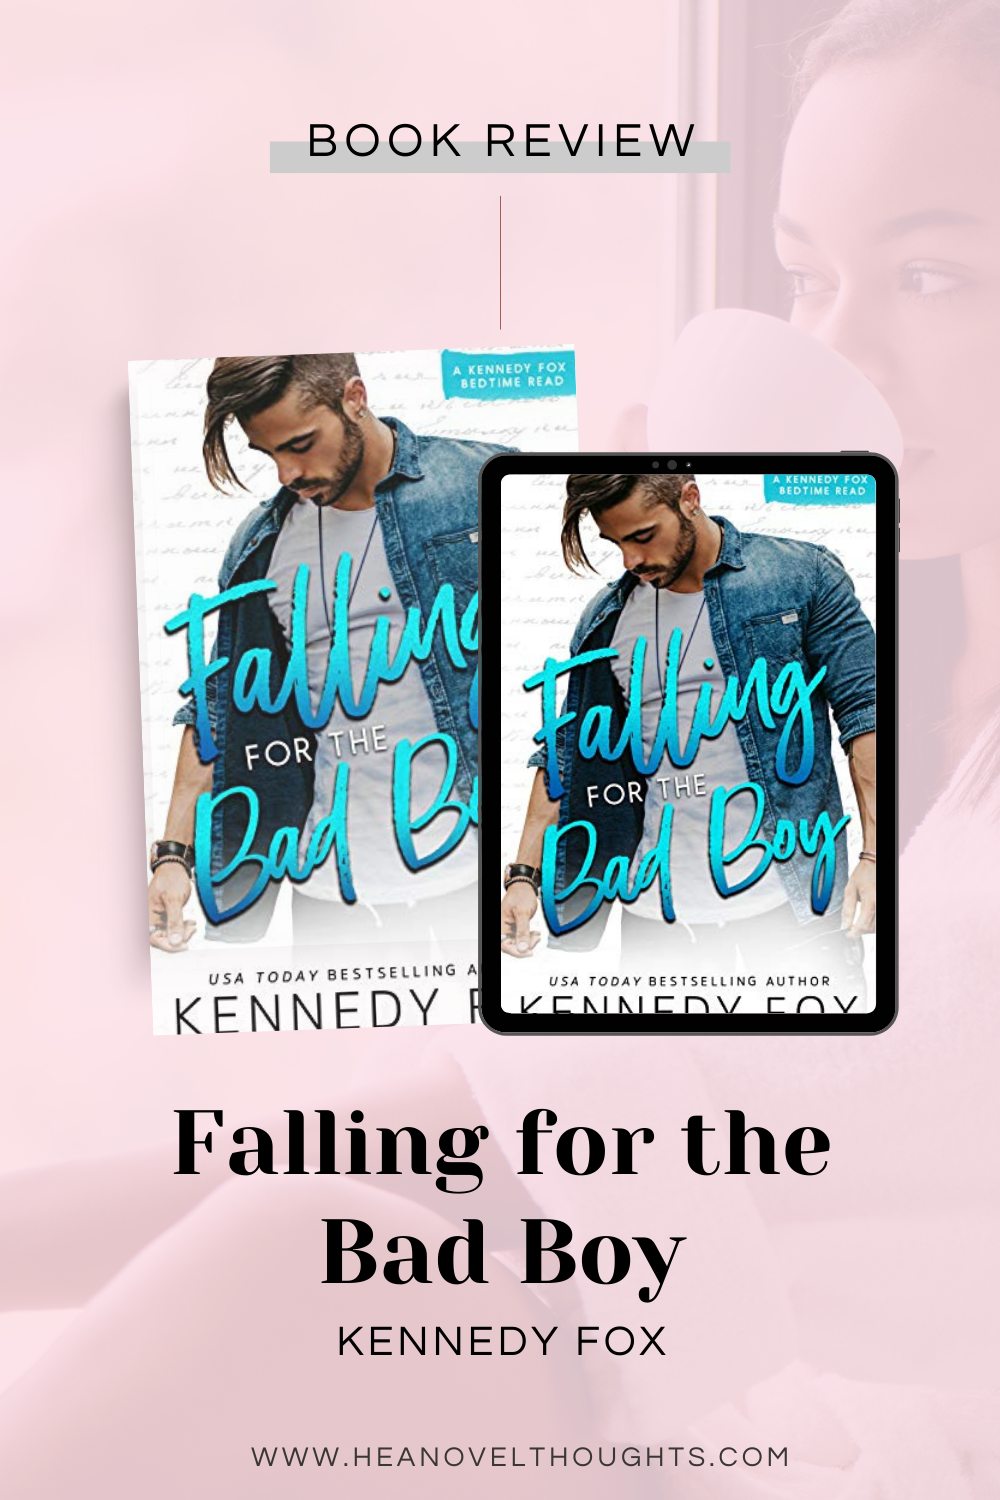 Falling for the Bad Boy by Kennedy Fox